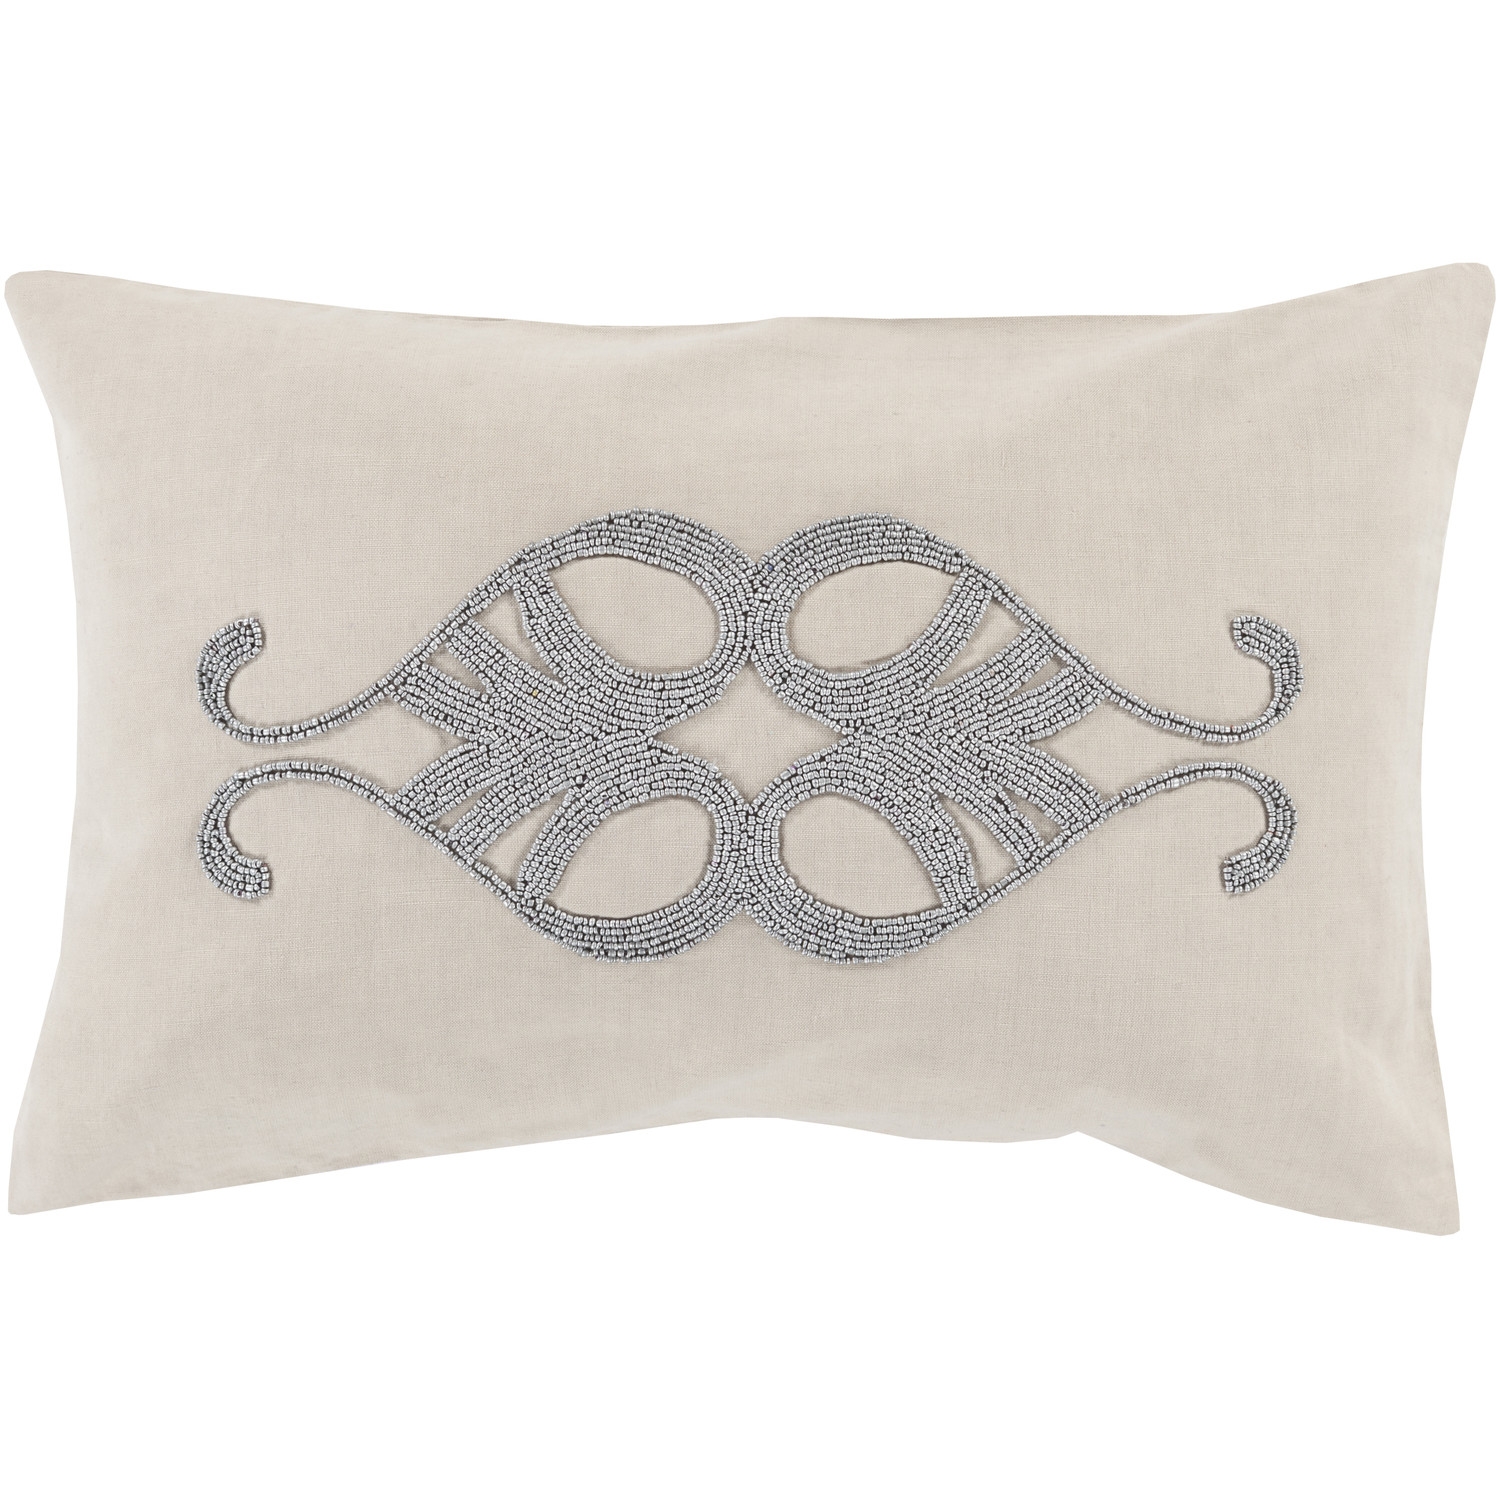 Lumbar Pillow - 13"x 20"x 5" - Beige - Polyester fill - Image 0